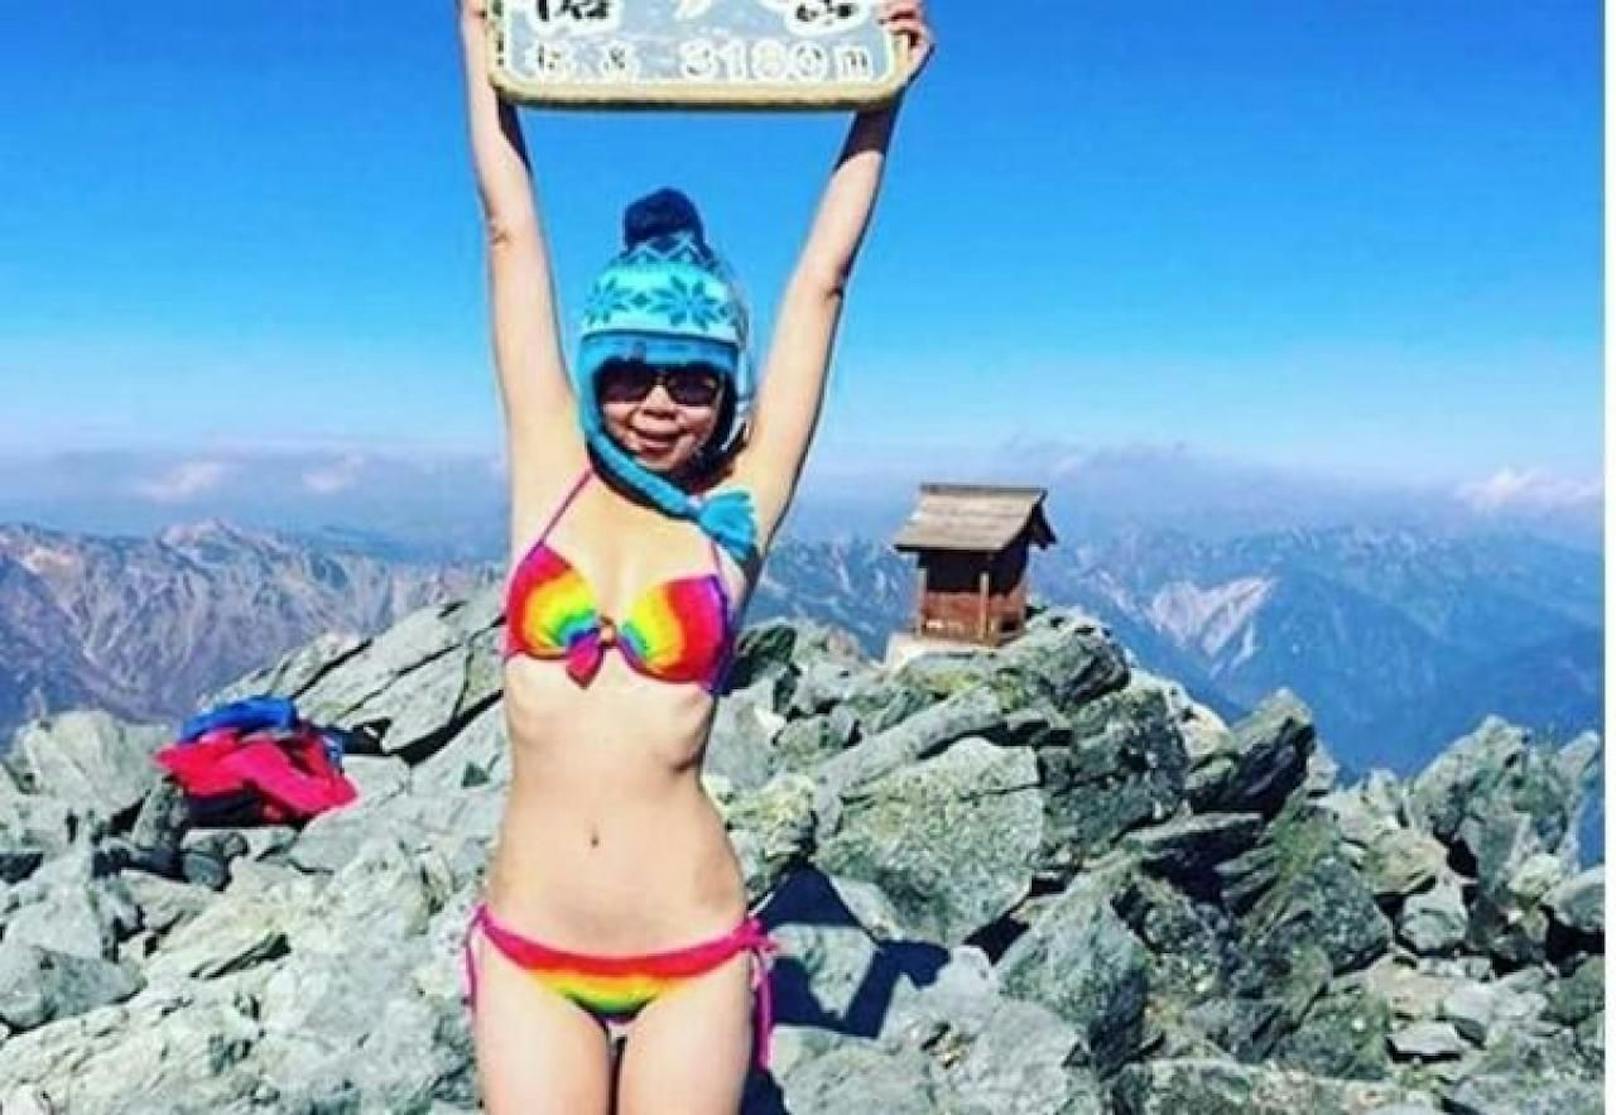 Die als Bikini-Bergsteigerin bekannte Taiwanerin Gigi Wu kam beim Sturz in eine Schlucht ums Leben.